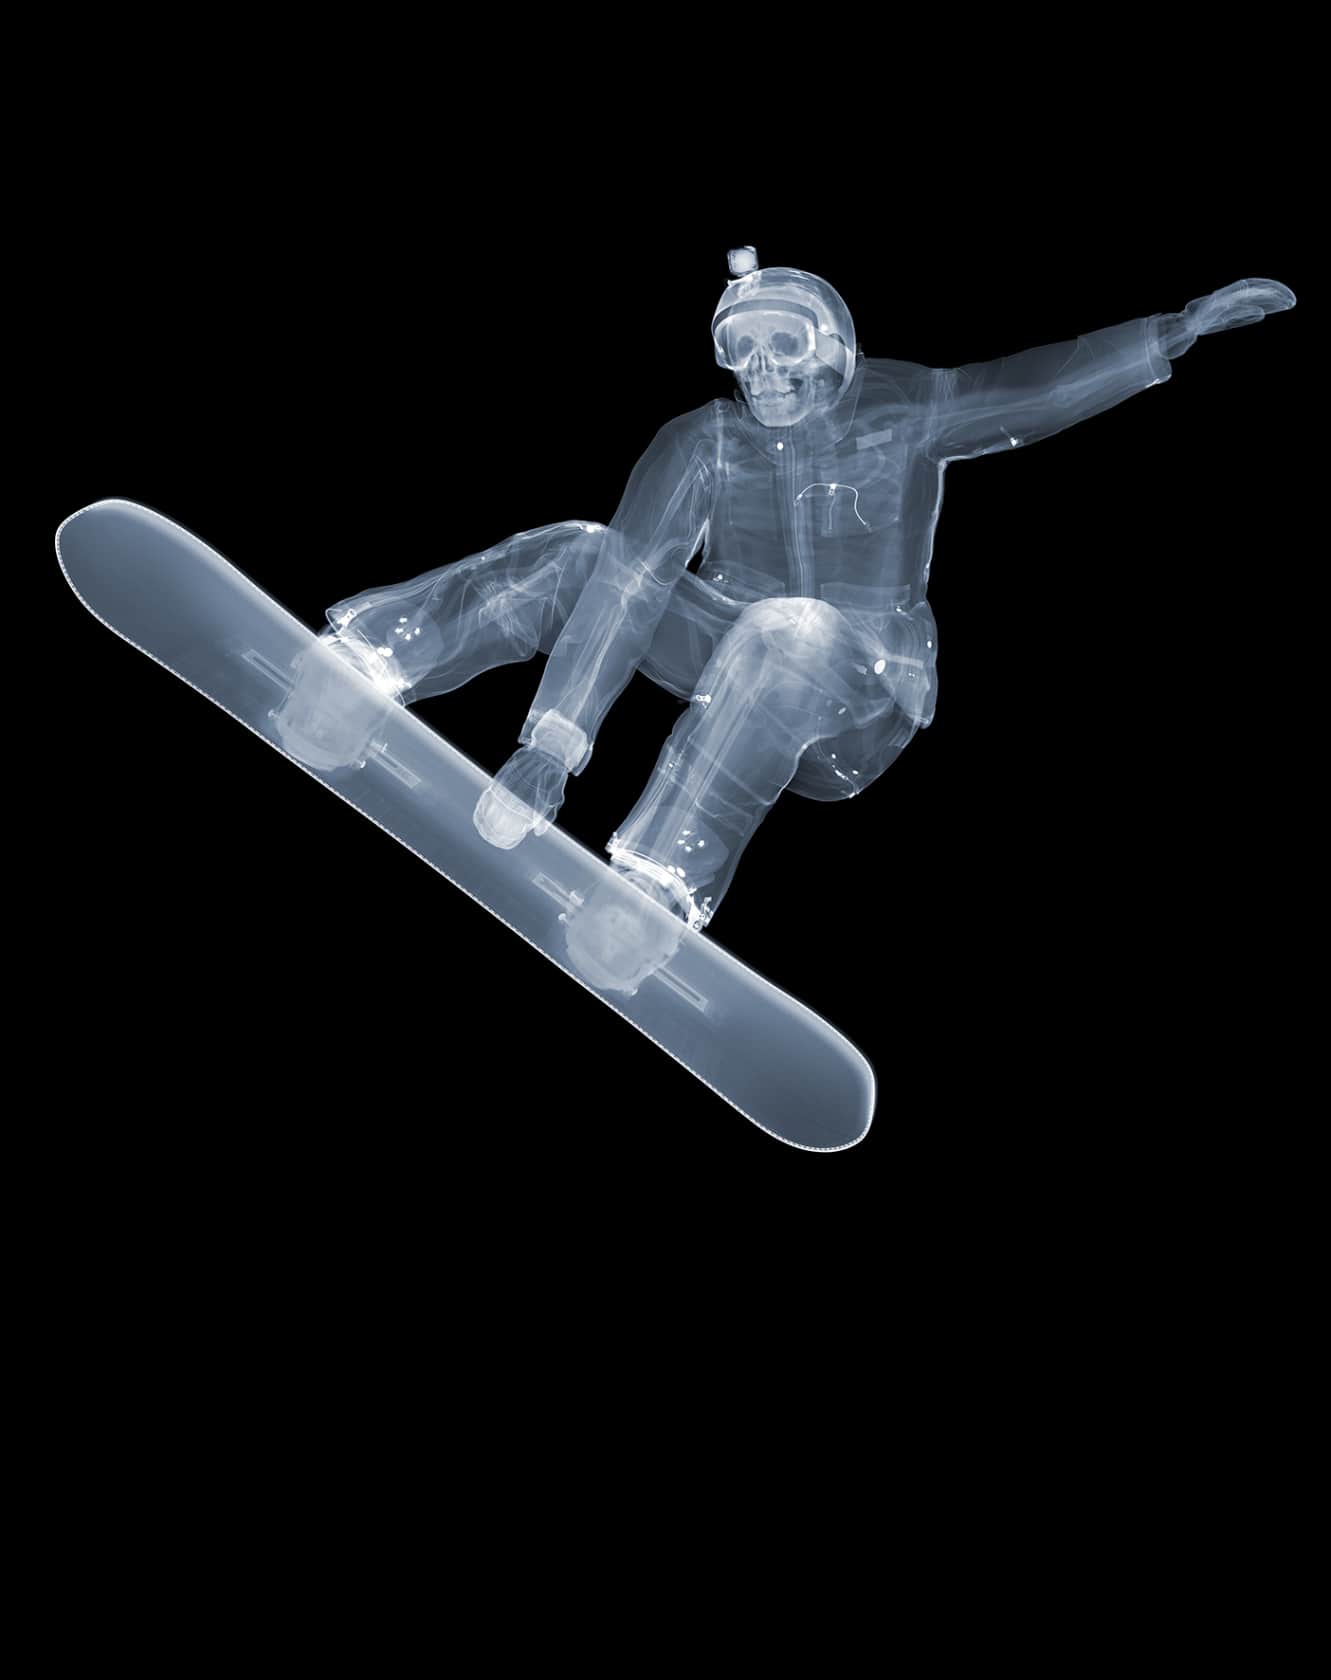 Nick Veasey, Snowboarder, 2018